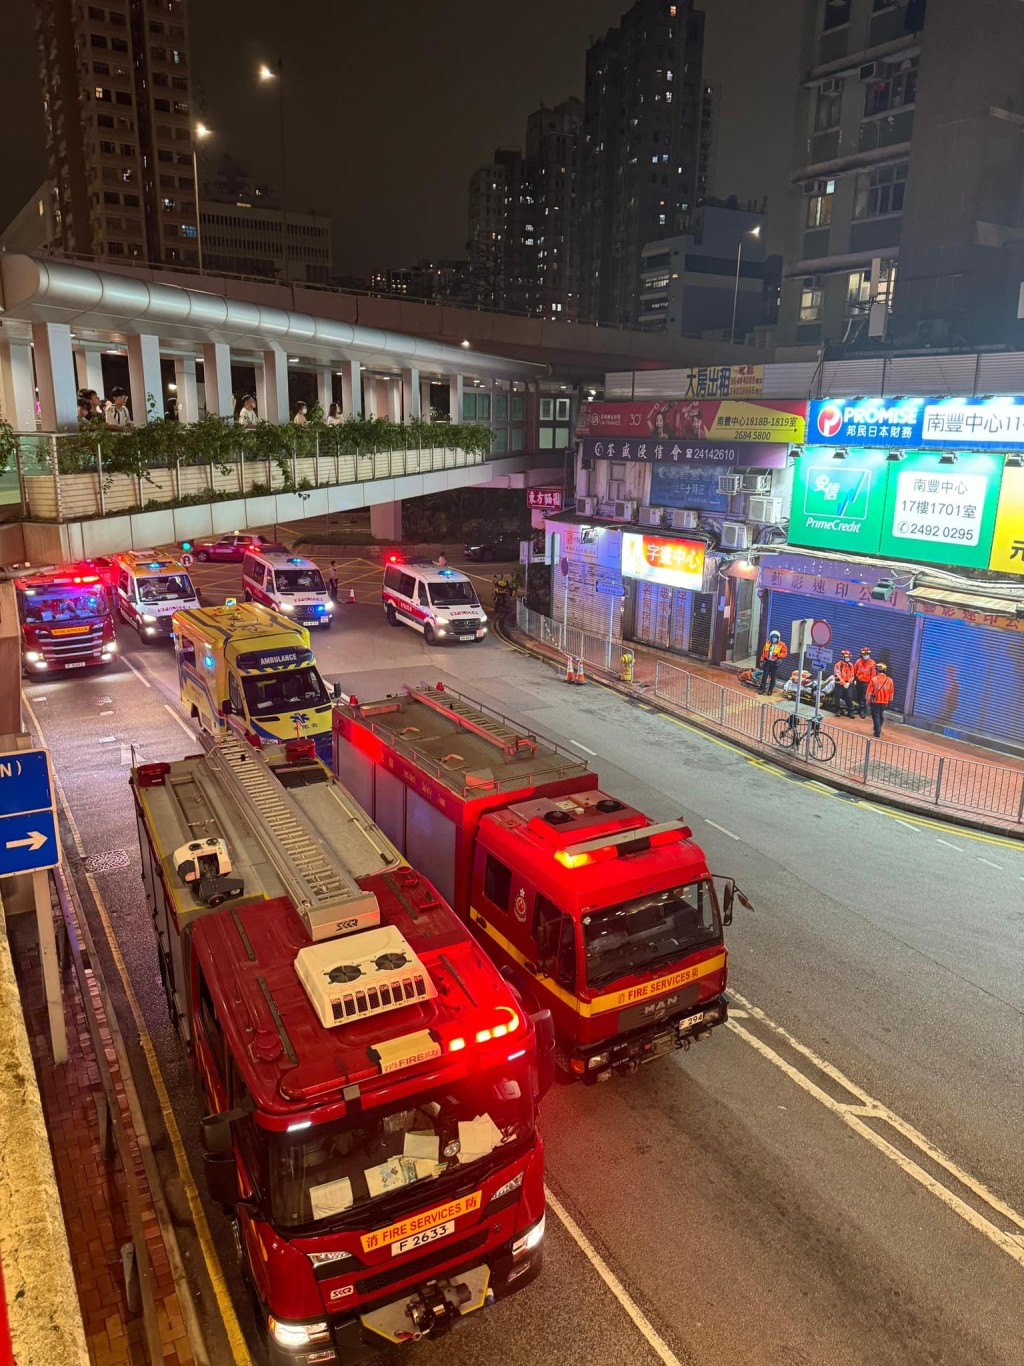 消防赶至将火救熄。荃湾区议员葛兆源FB 